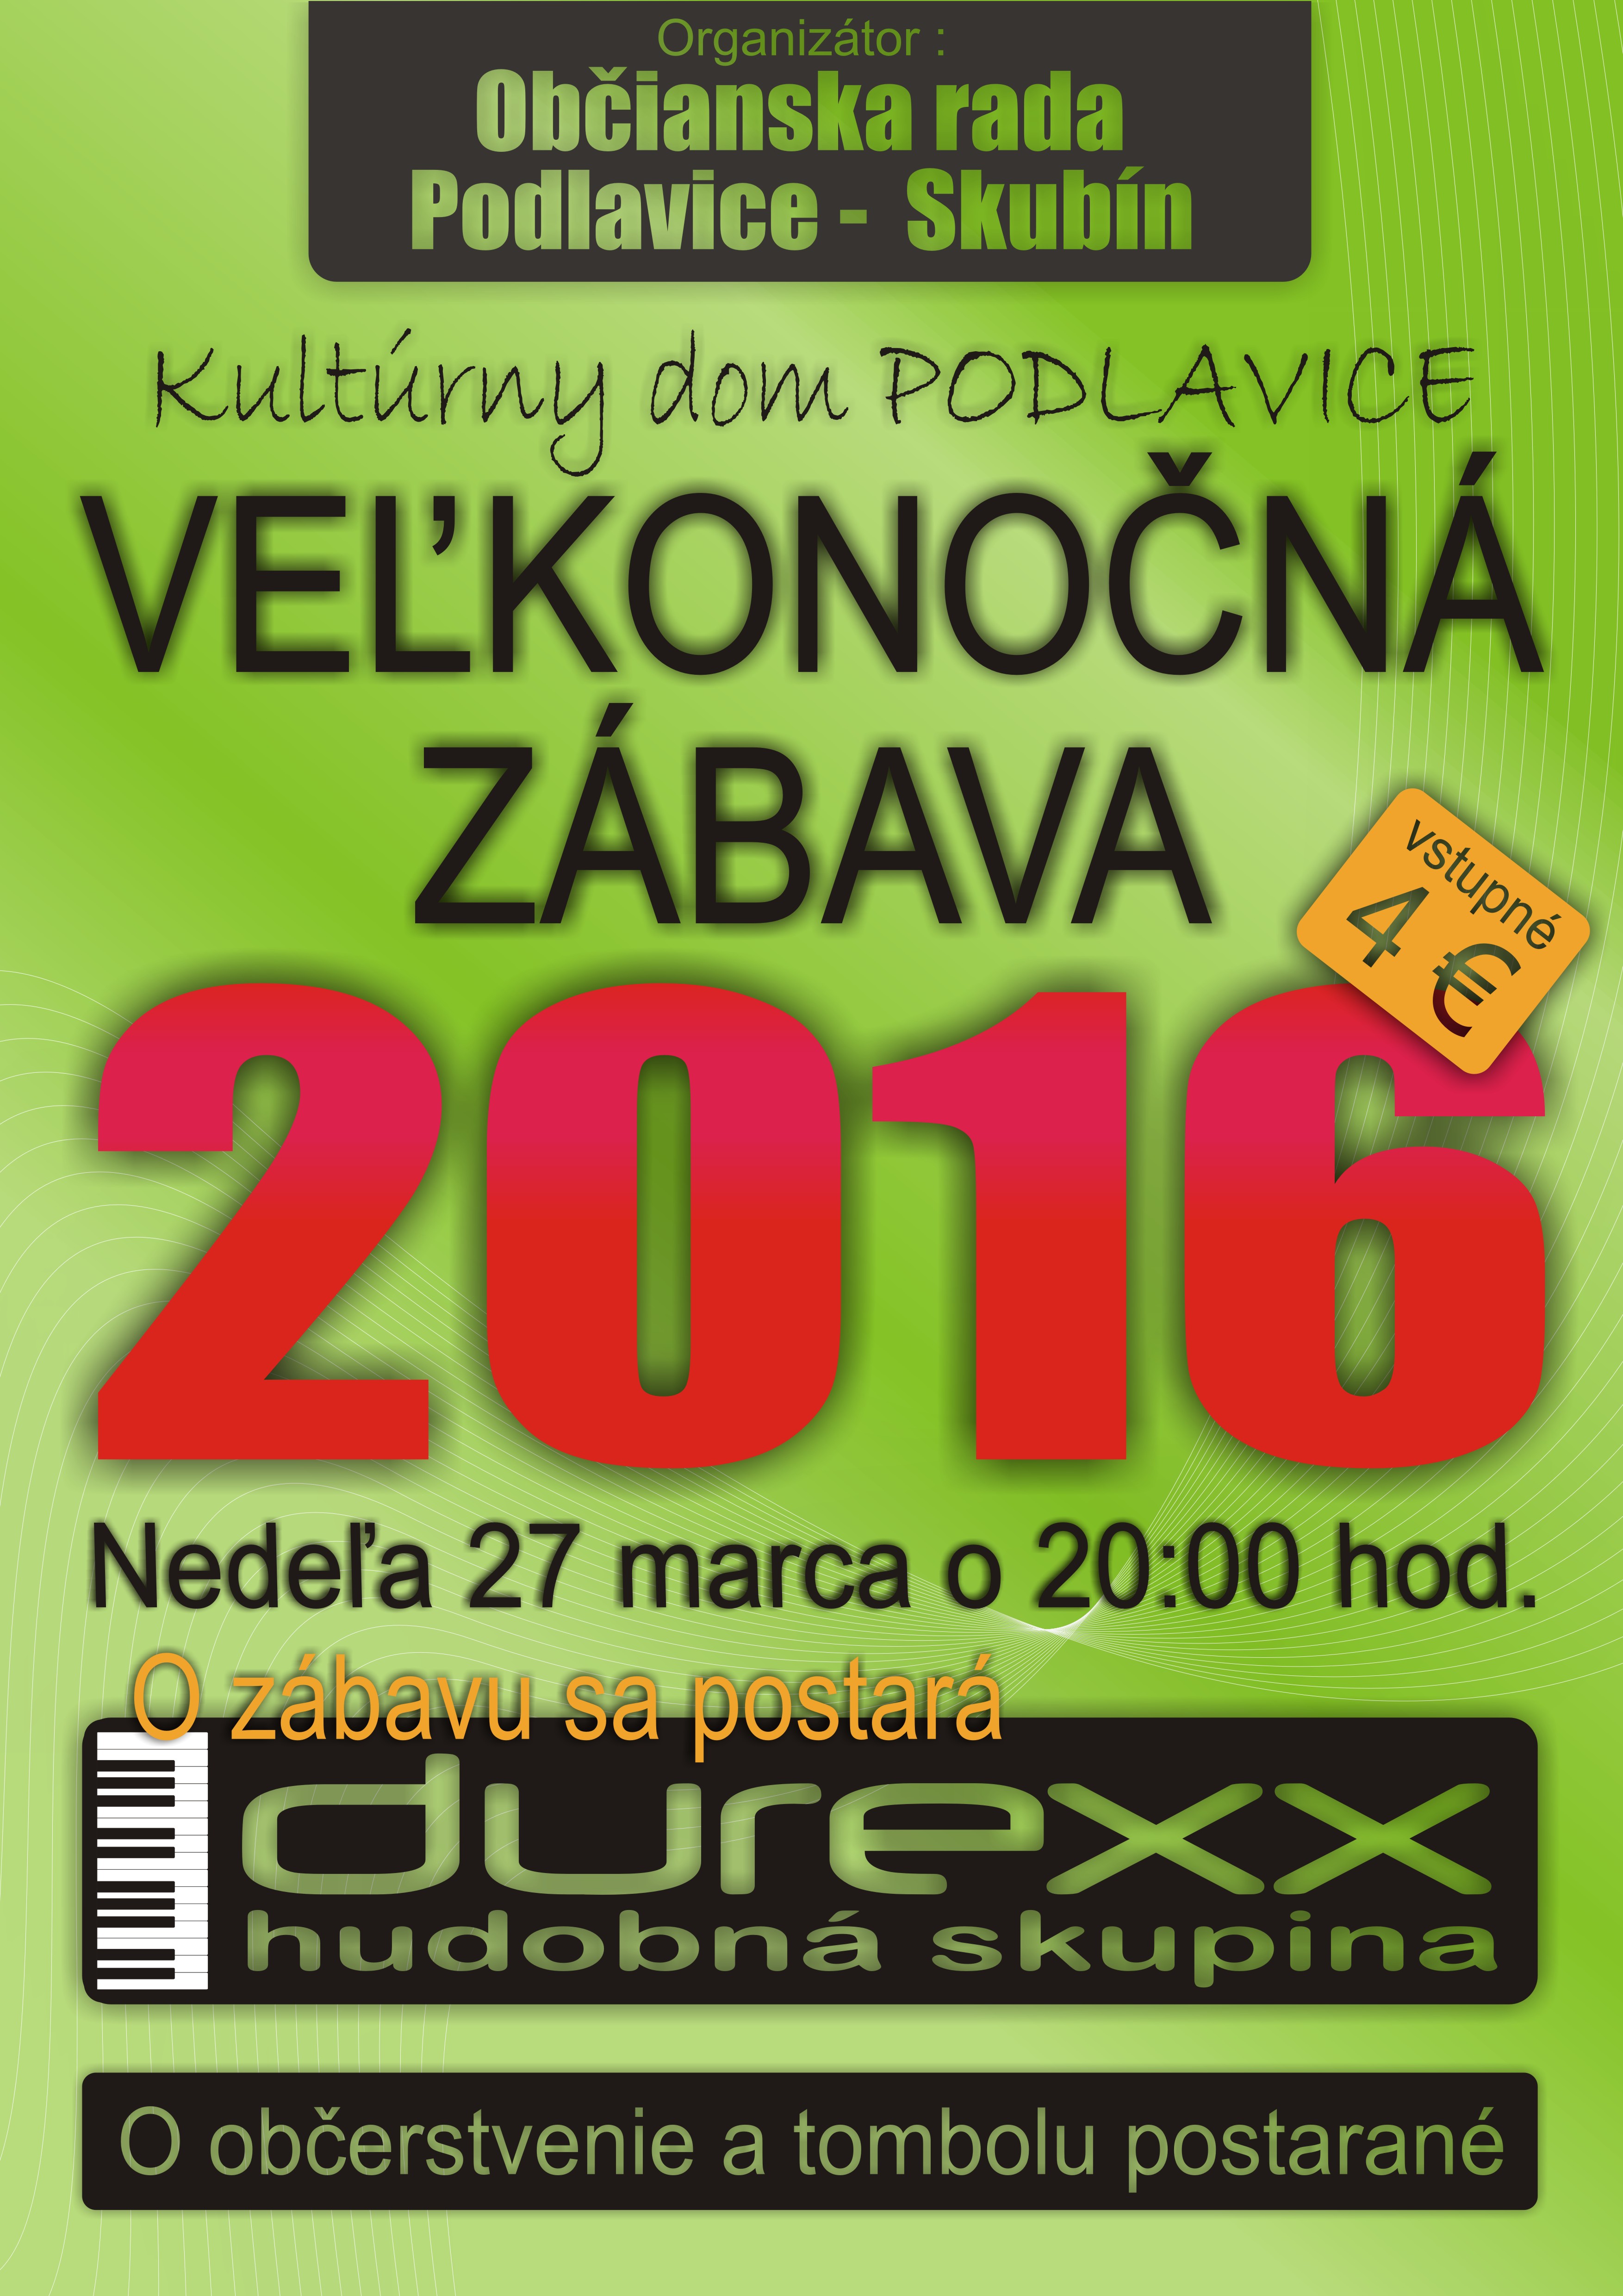 Vekonon zbava Podlavice 2016